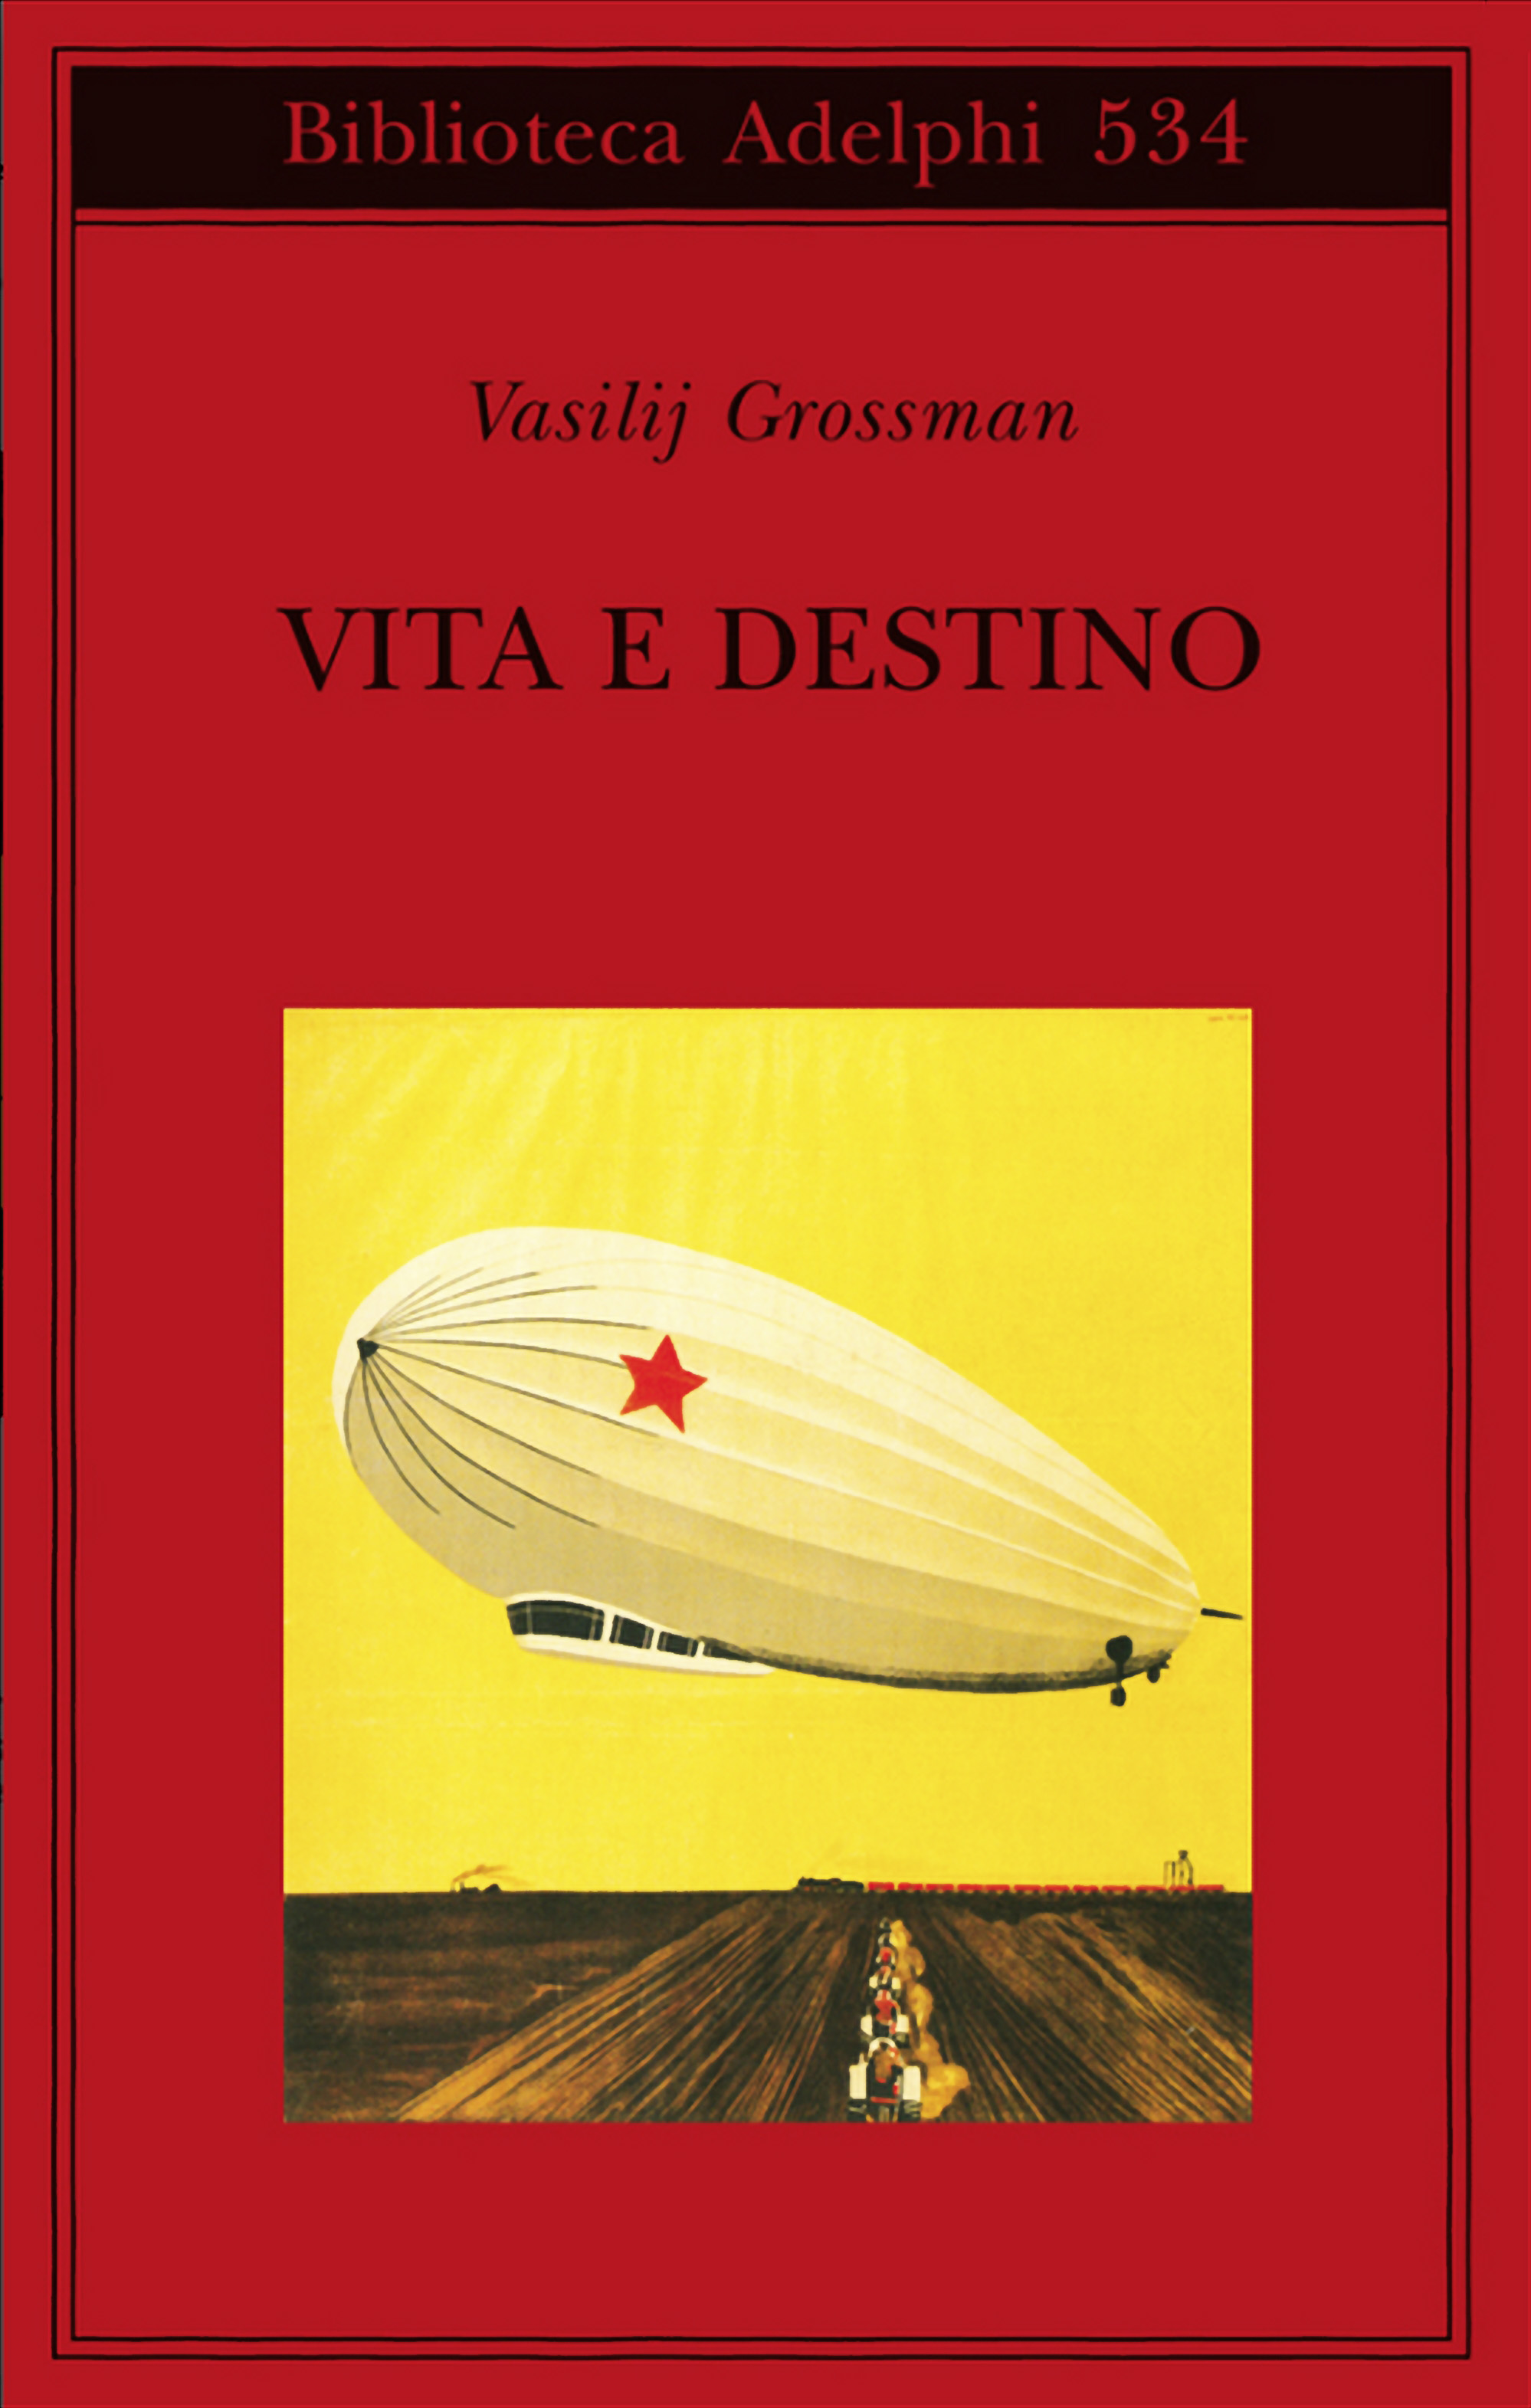 More about Vita e destino